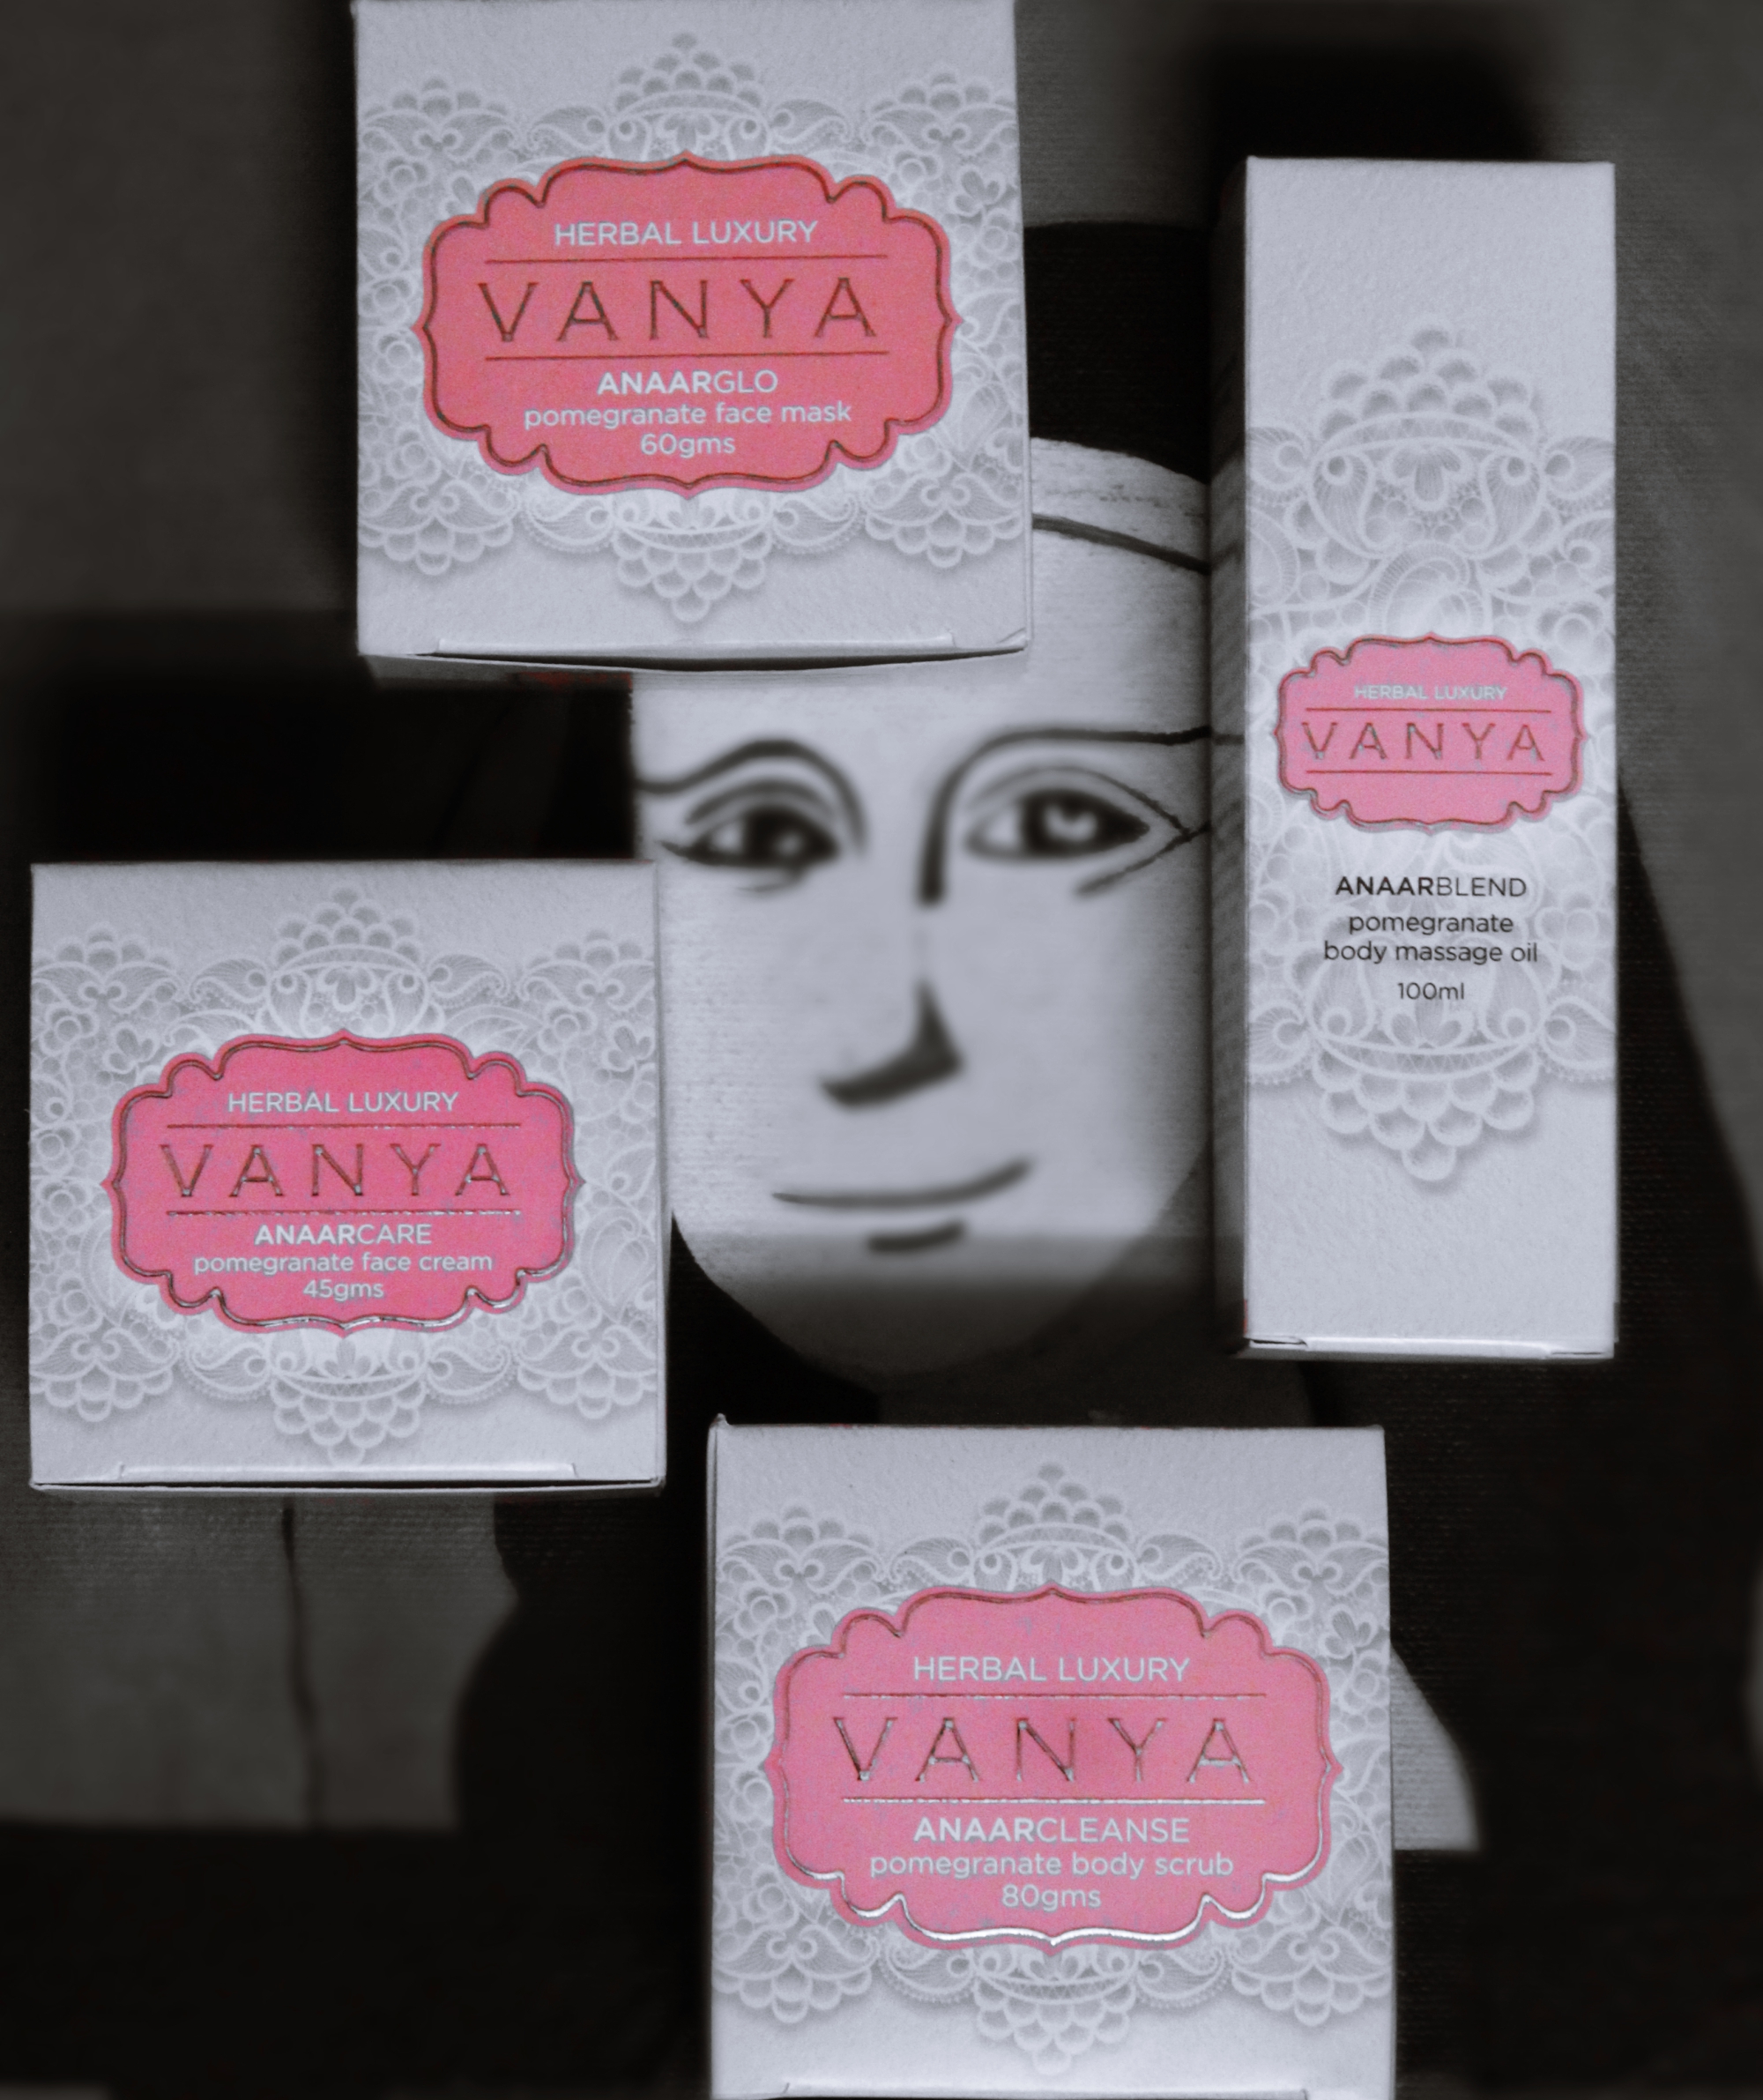 Vanya Herbal Luxury: New Skincare Love